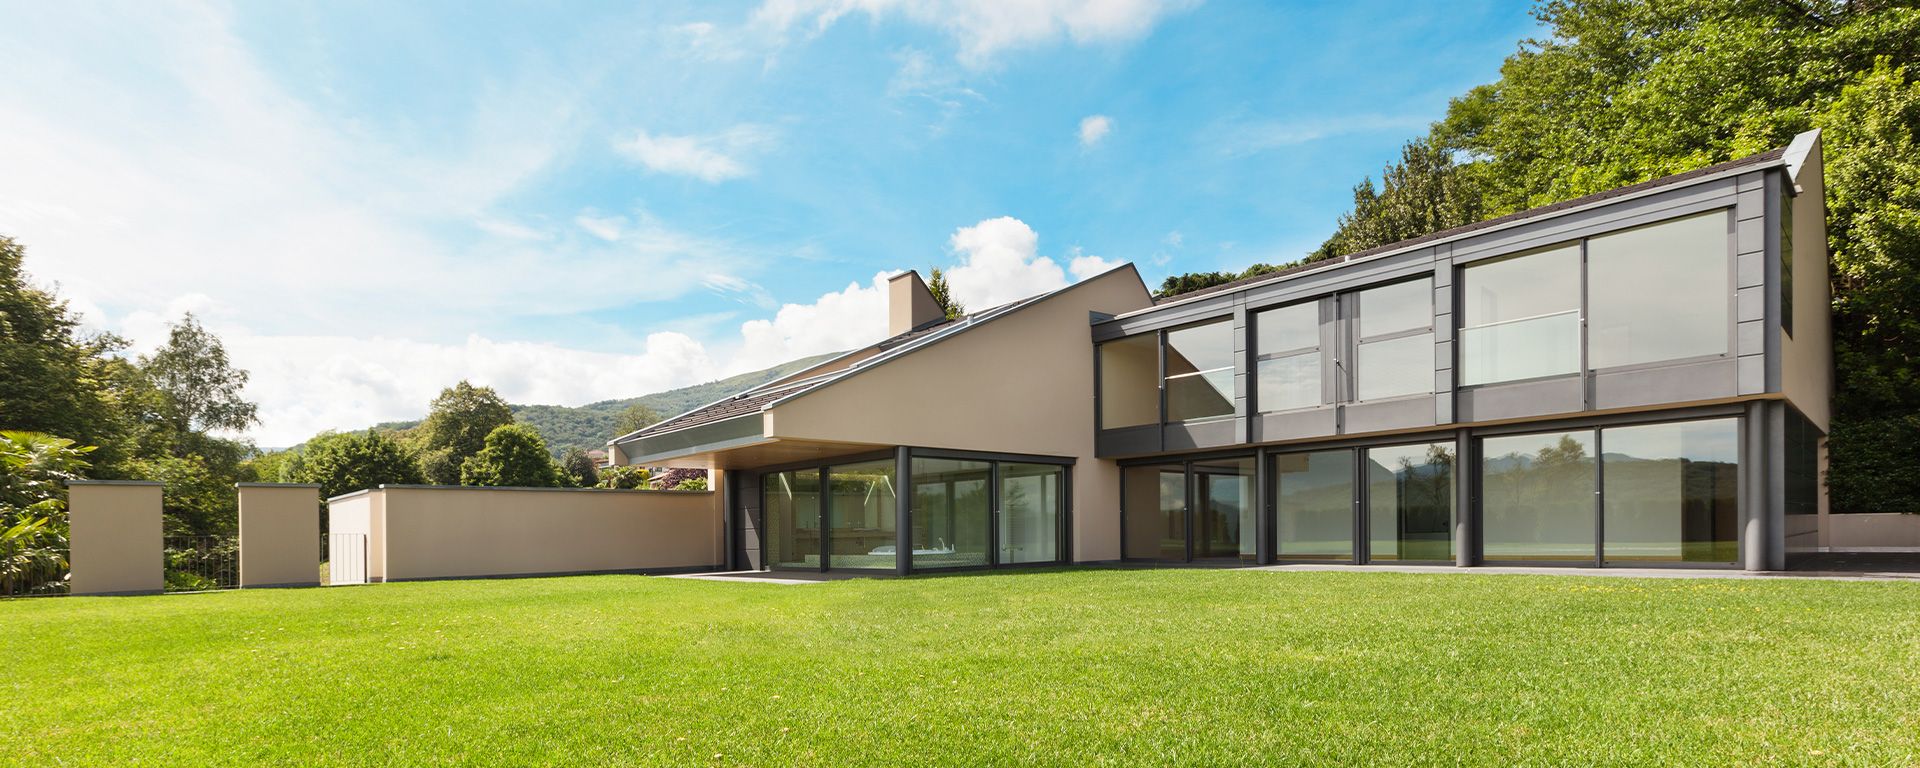 moderne Villa mit großer Fensterfront